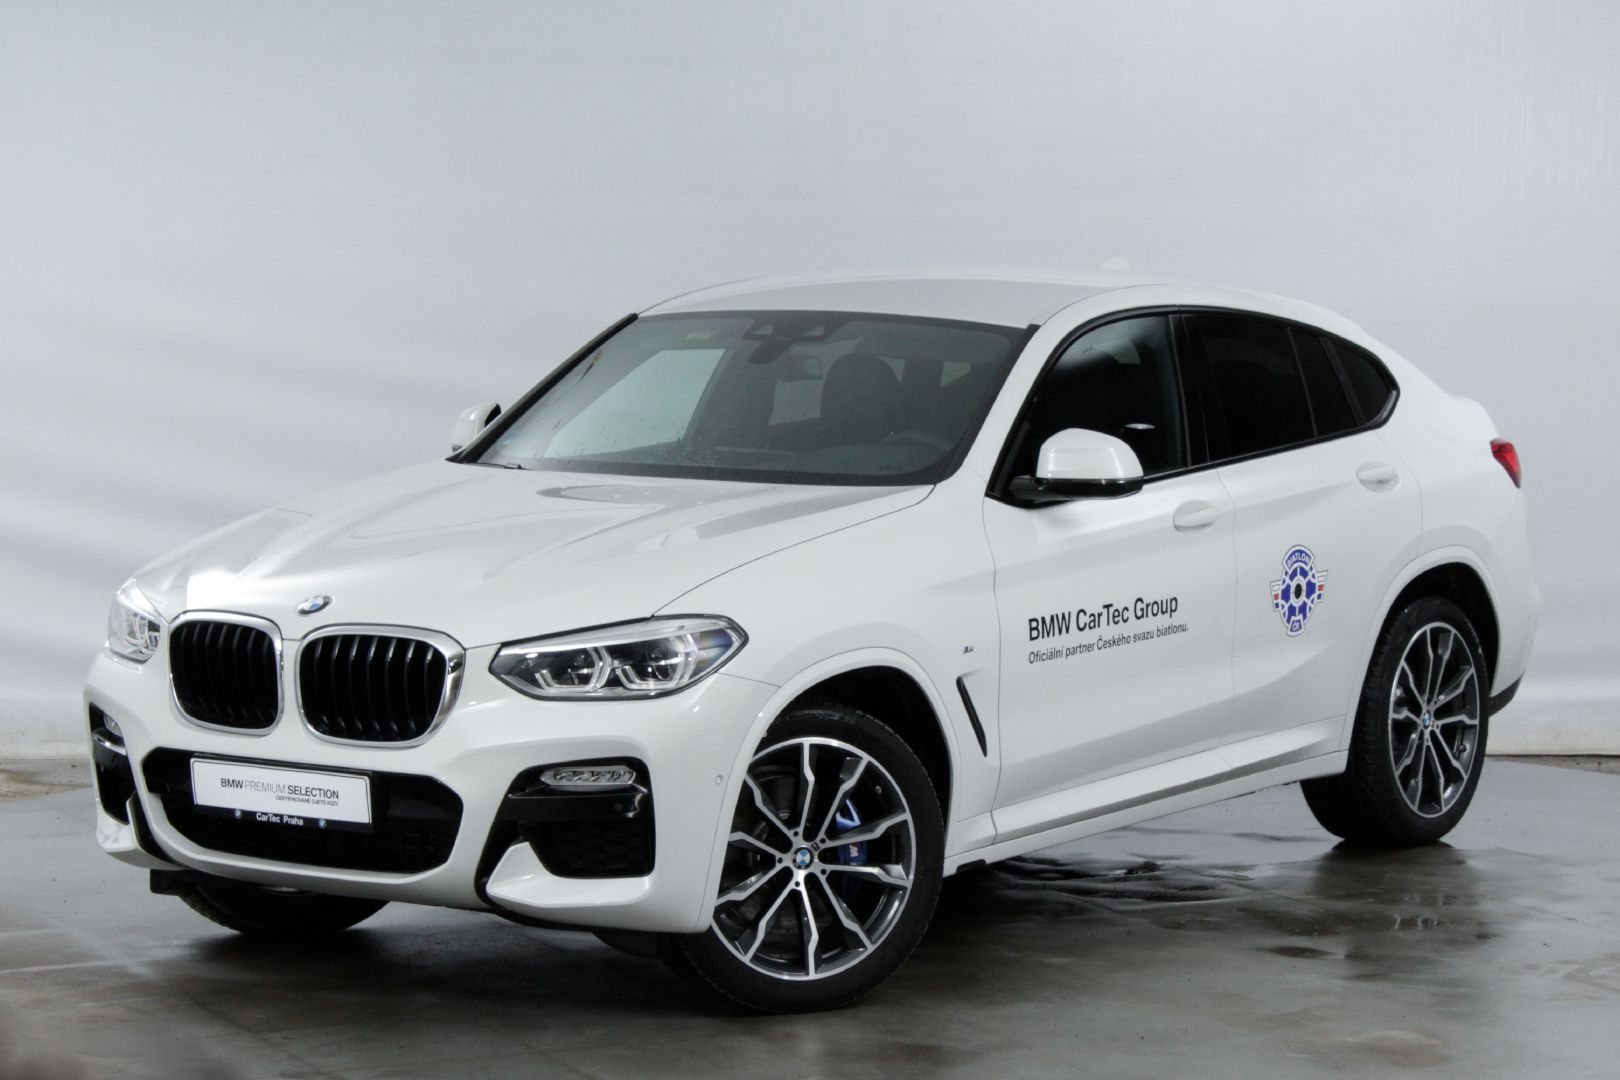 BMW X4 xDrive25d - bíla Alpine White, předváděcí auto skladem, sleva 23%